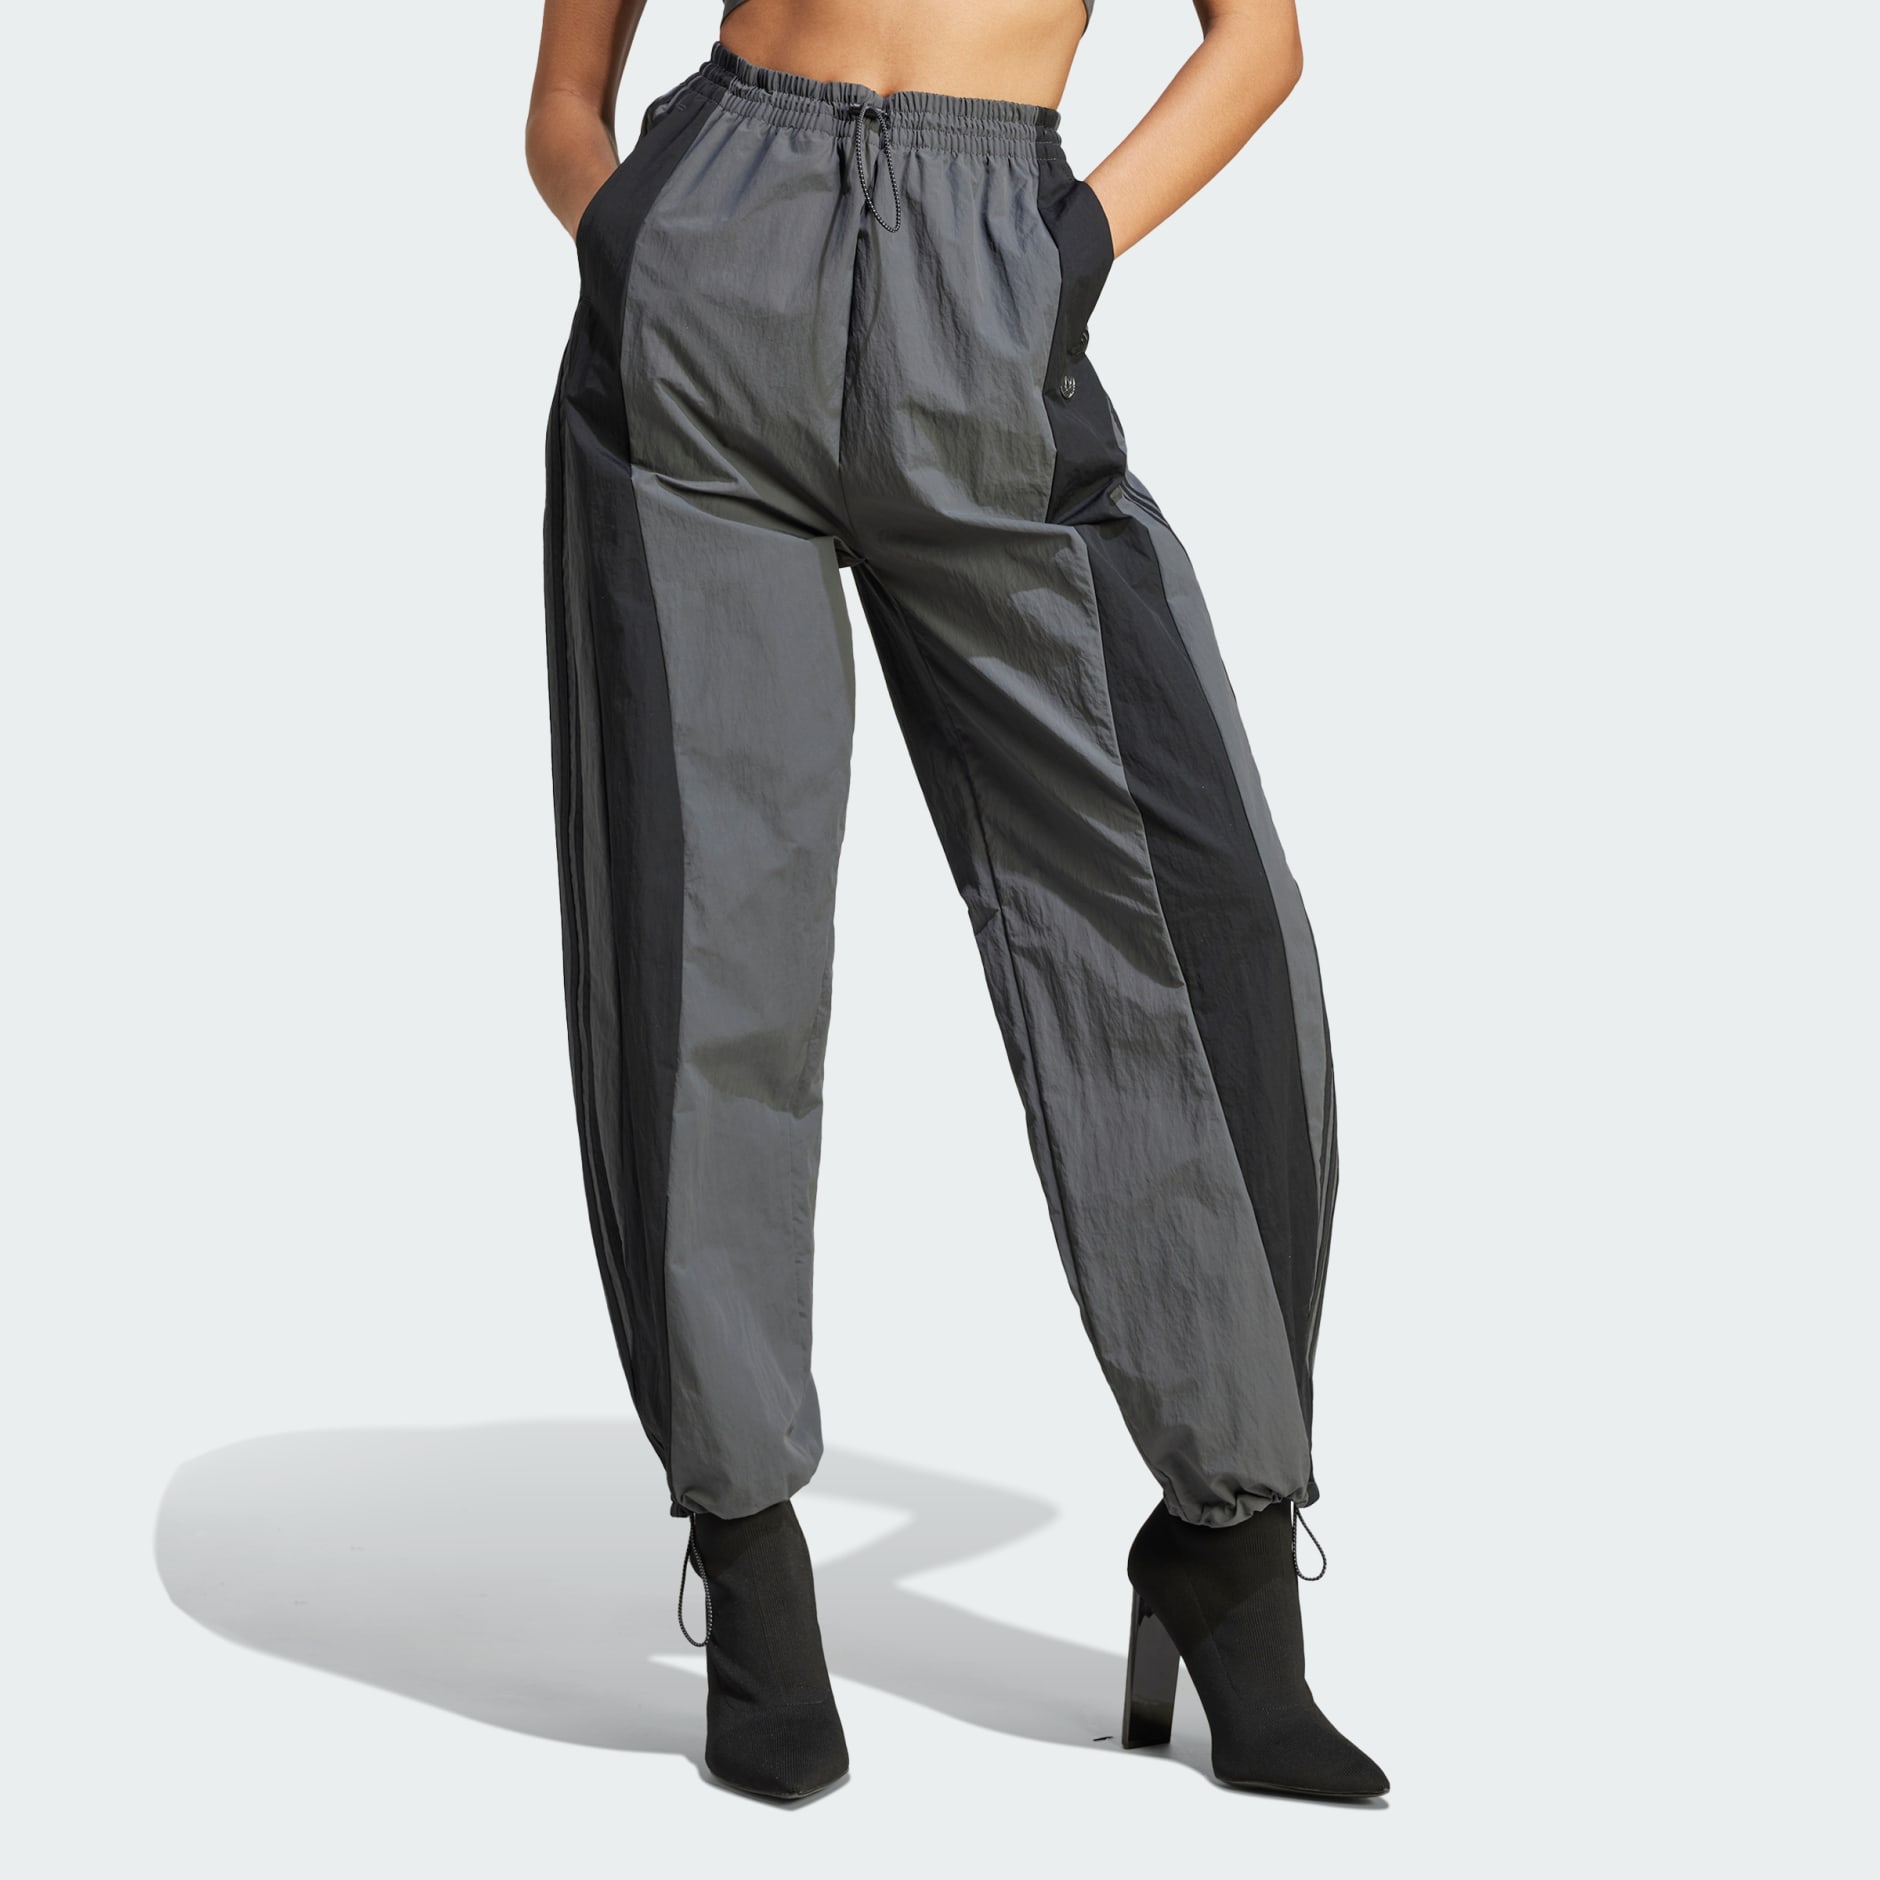 Women's Clothing - Cut Line Parachute Pants - Grey